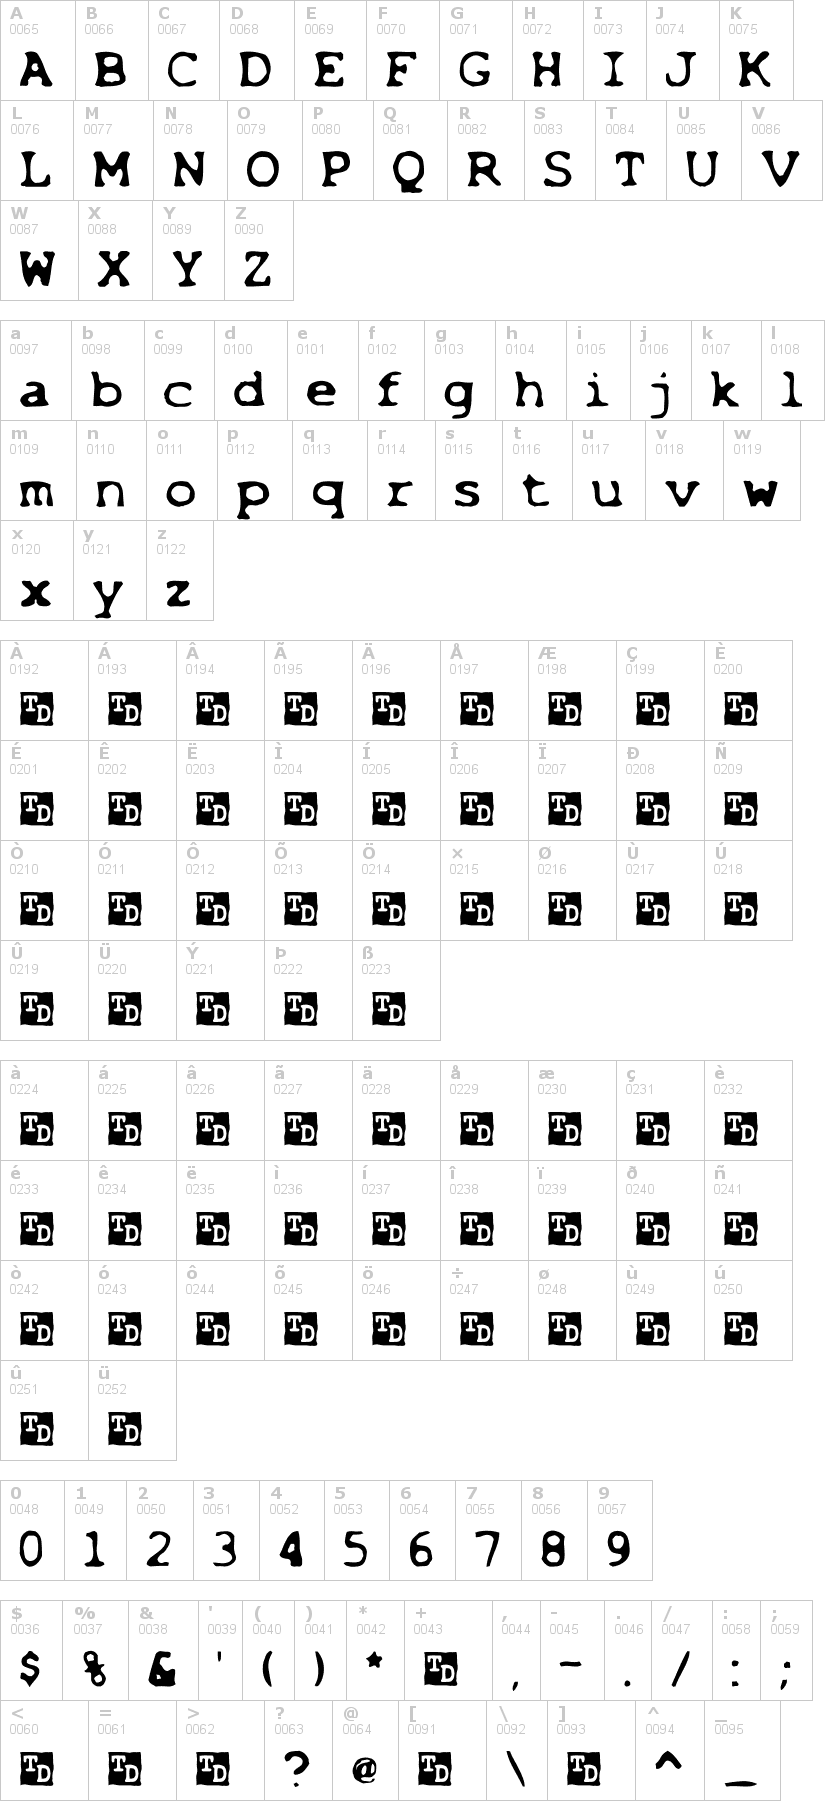 Lettere dell'alfabeto del font xfiles1 con le quali è possibile realizzare adesivi prespaziati